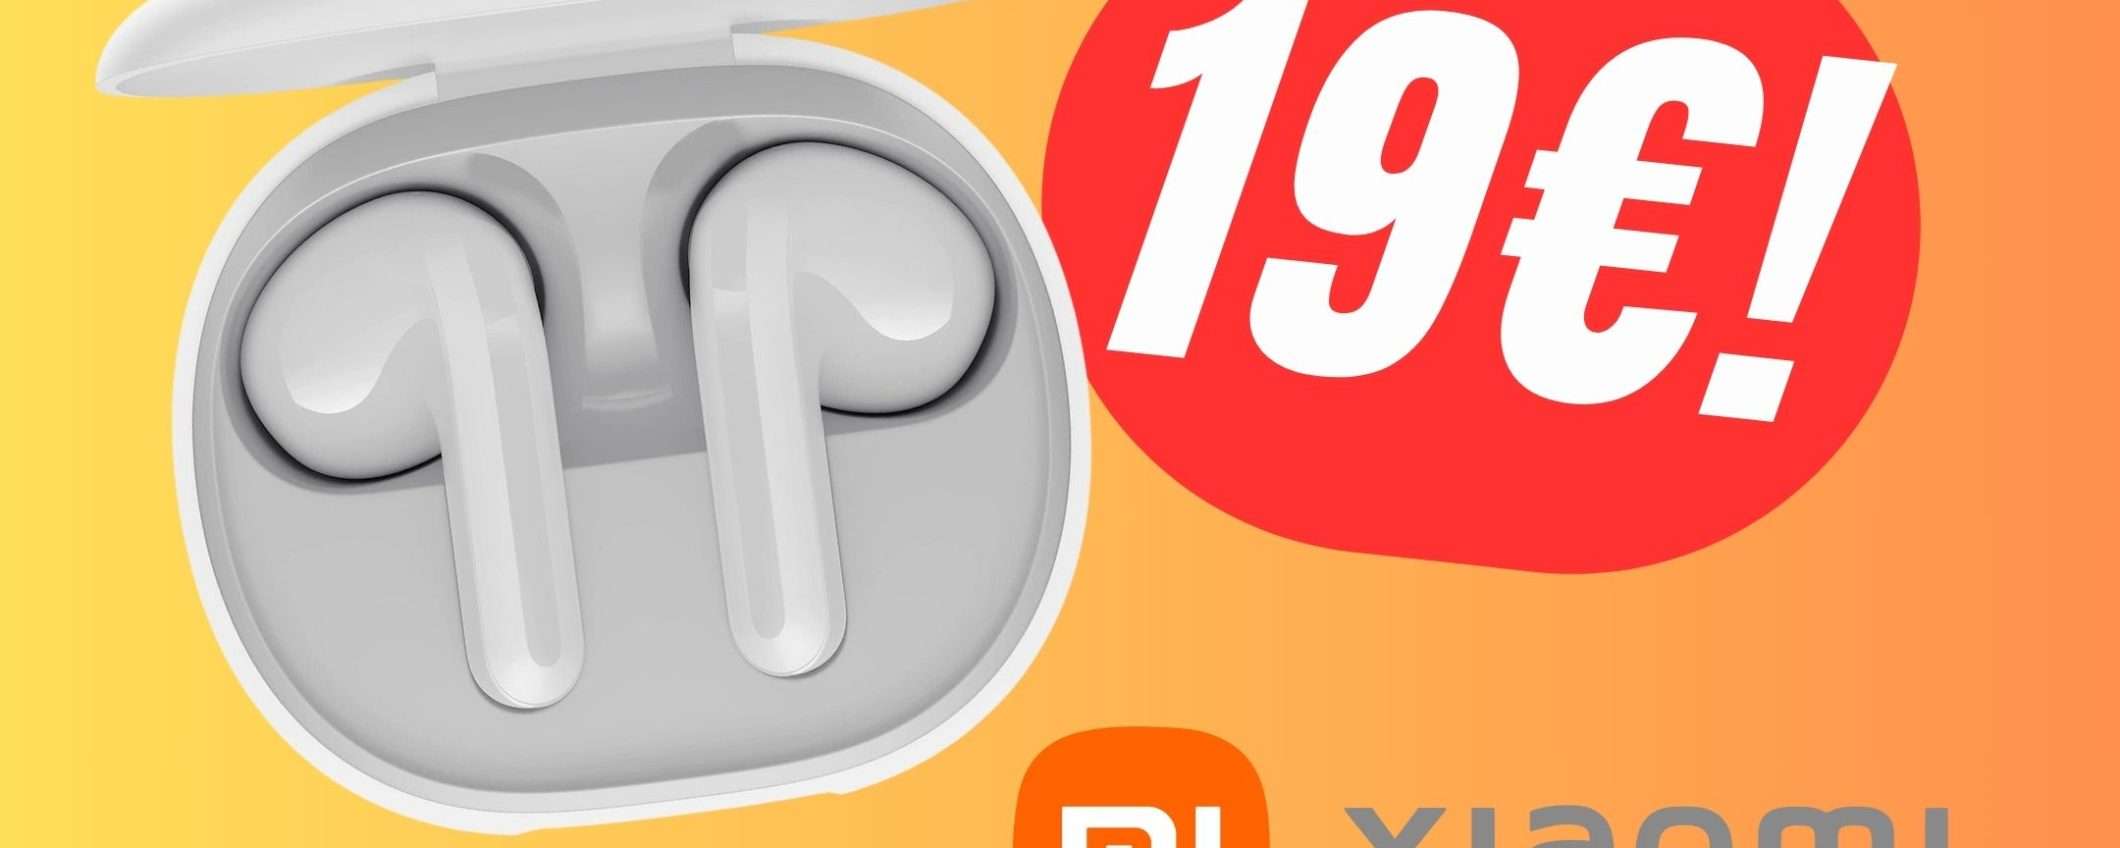 PREZZO FOLLE per gli Auricolari senza fili di Xiaomi: solo 19€!